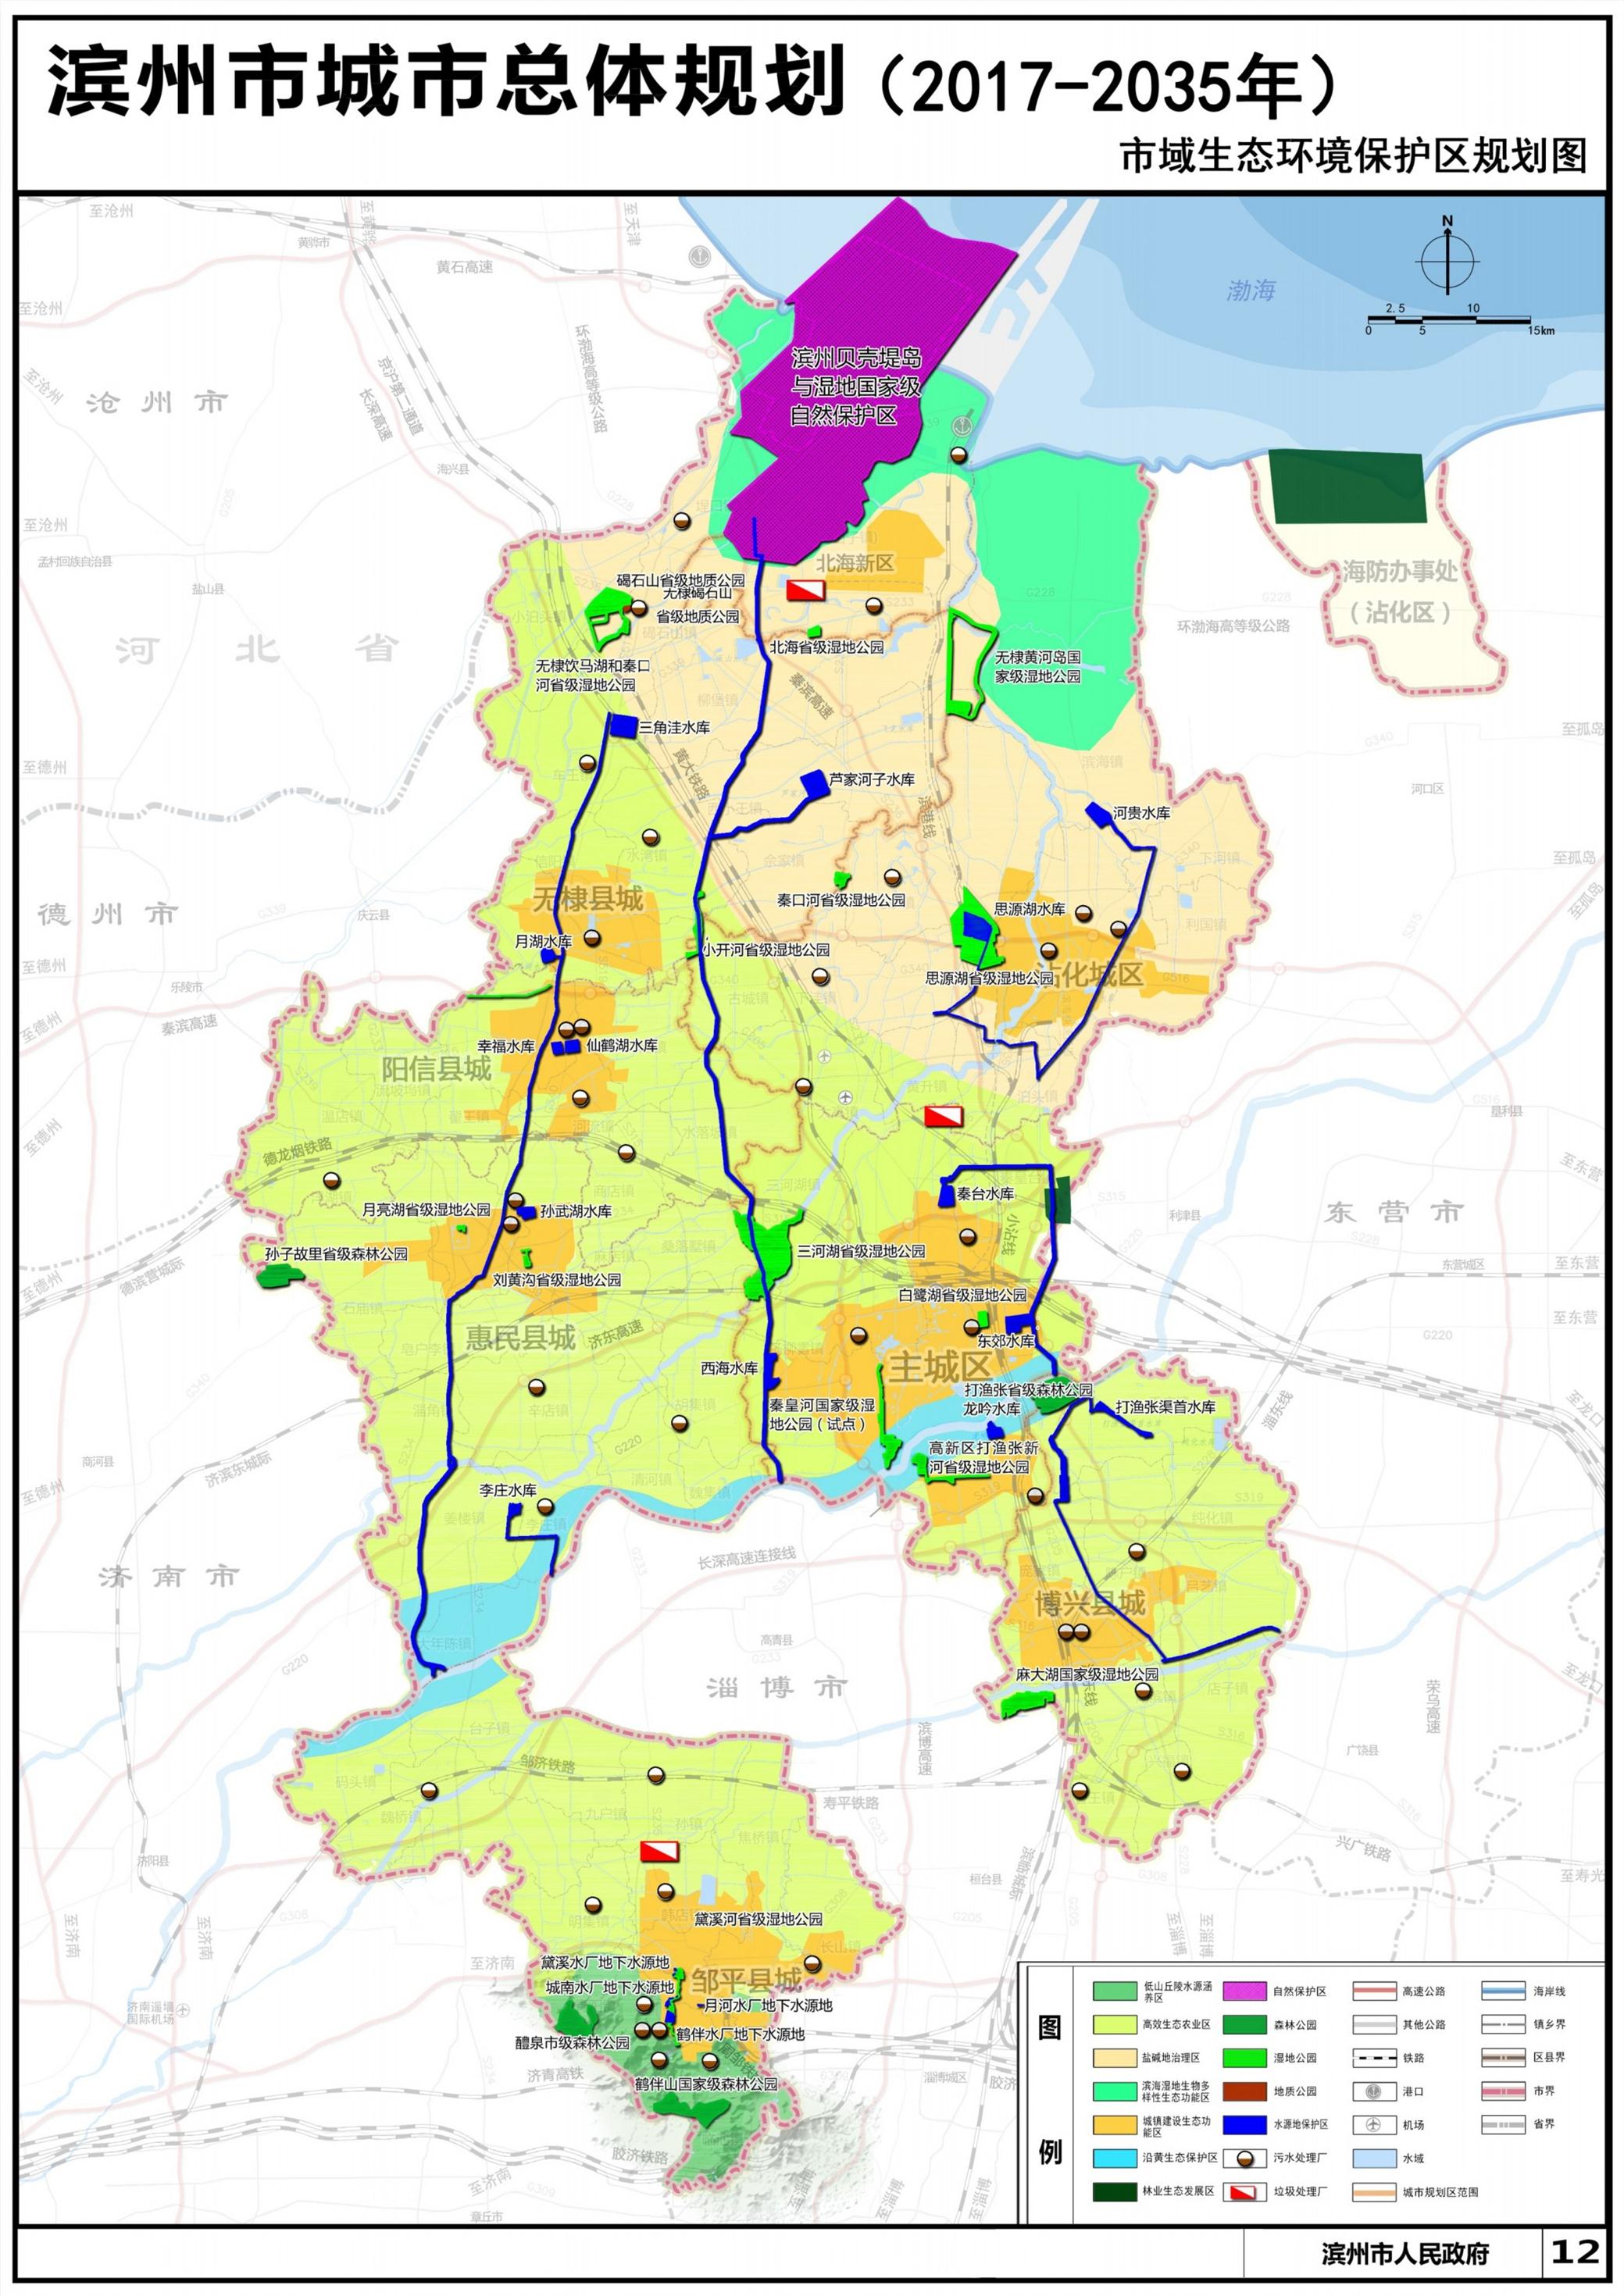 《滨州市城市总体规划(2017-2035年)》 (草案)公示和